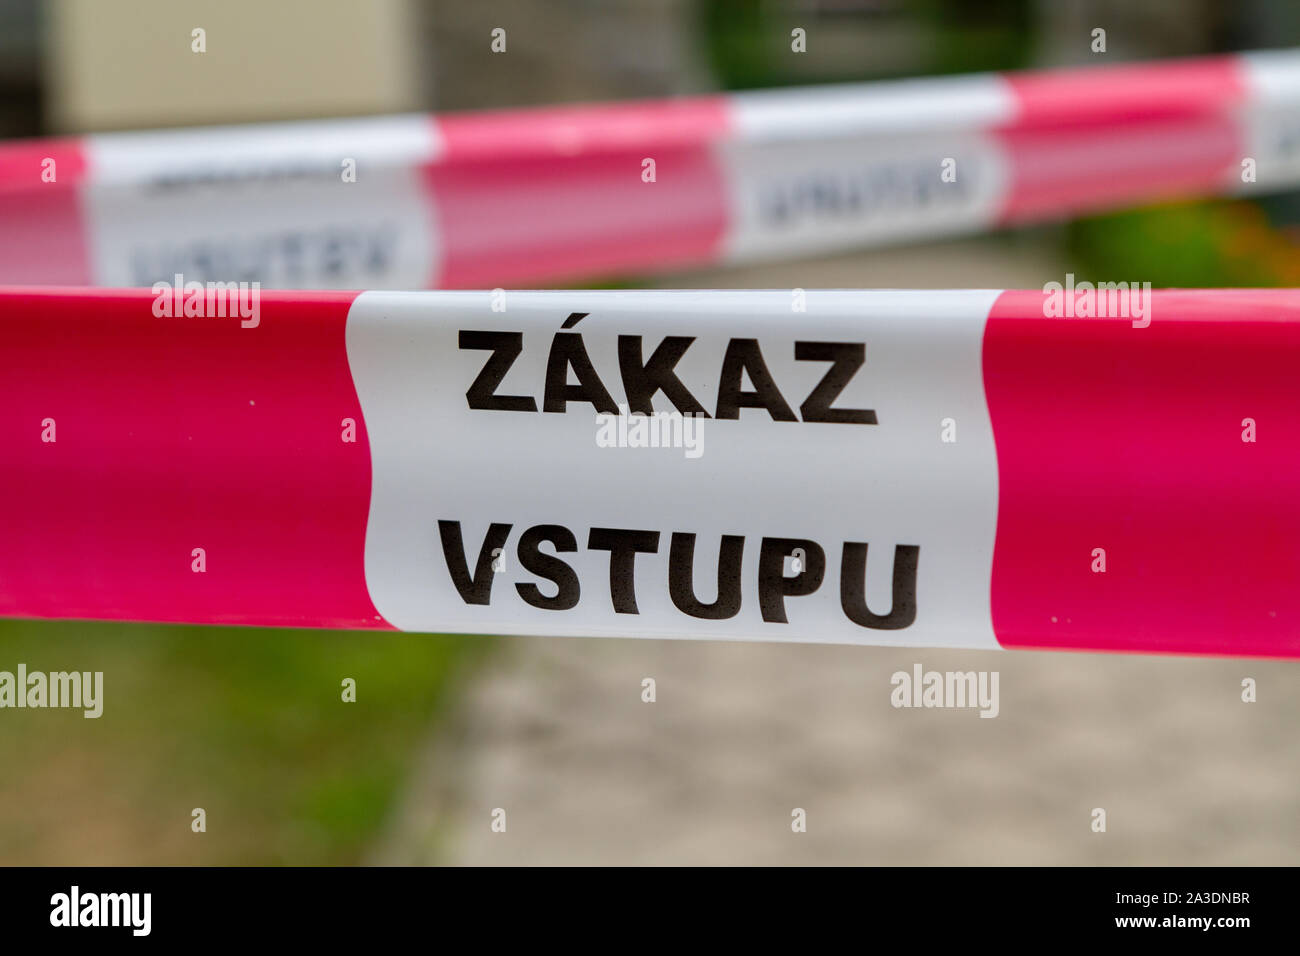 Un cordon avec les mots 'Zakaz vstupu" qui signifie "en slovaque Pas d'entrée' ou 'Entrée interdite' Banque D'Images